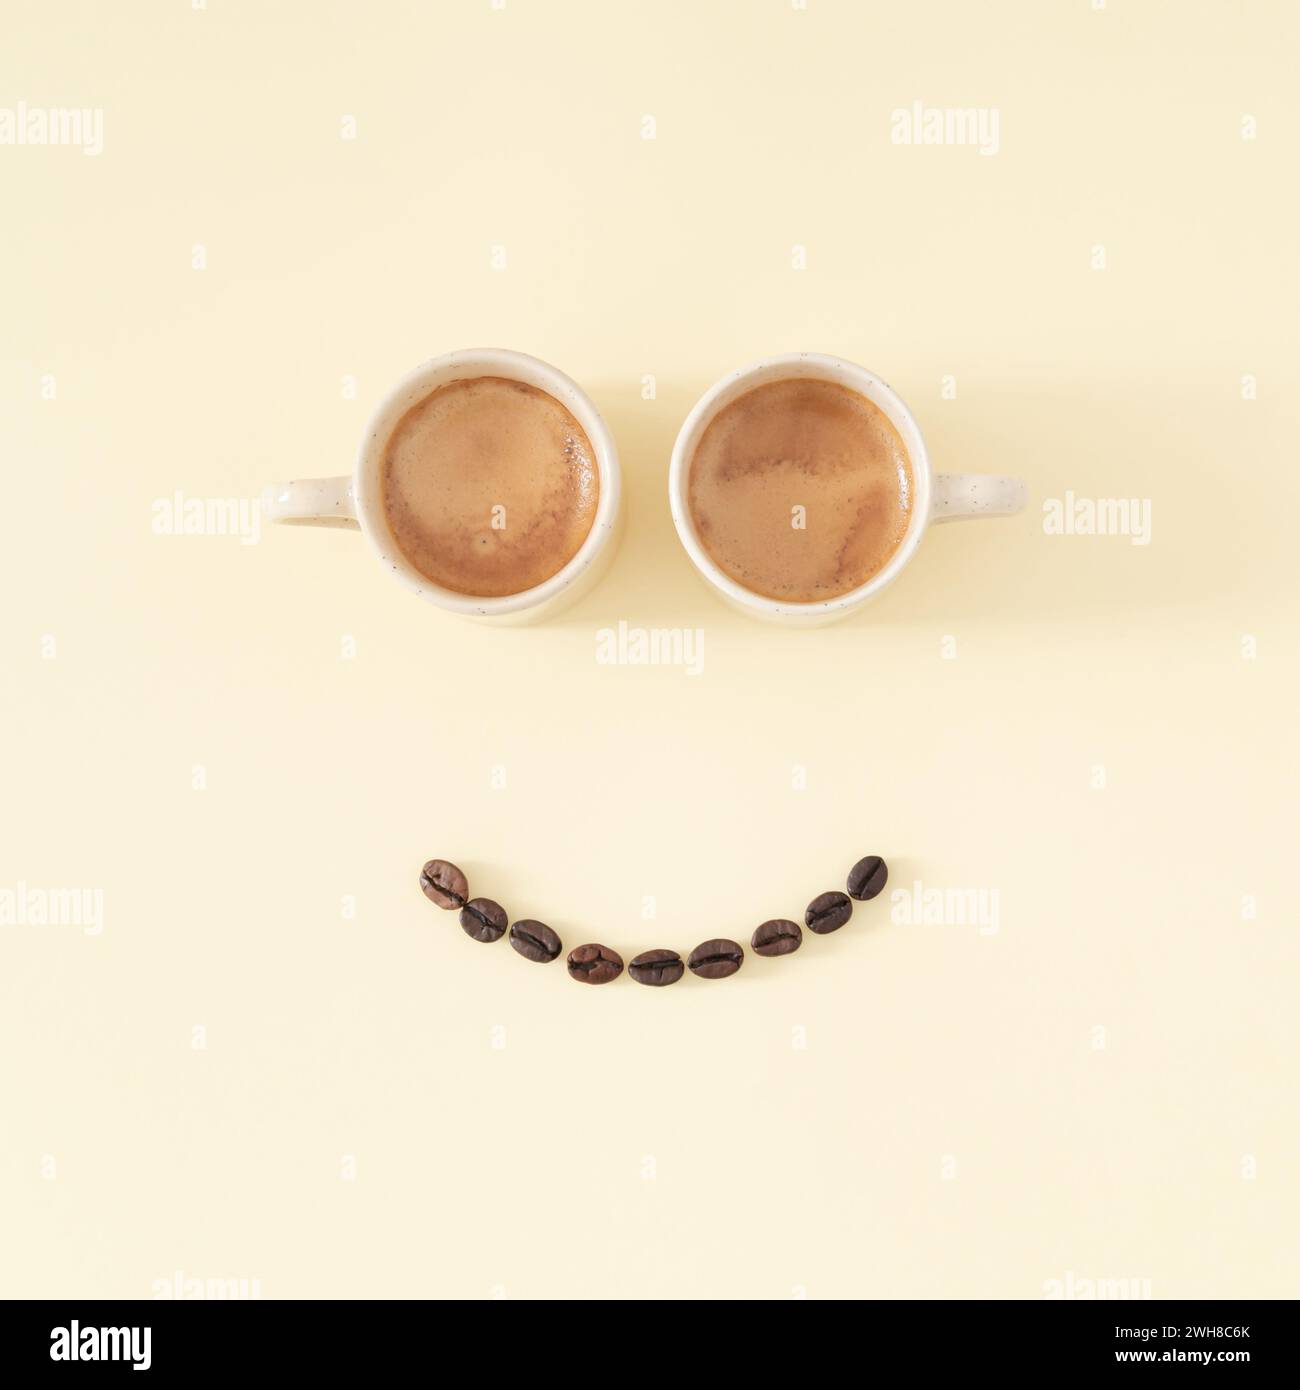 Layout des Smiley Emoticon mit Kaffeetassen und Kaffeebohnen auf pastellfarbenem Hintergrund. Minimales Kaffeekonzept. Kreatives positives Denken, gute Laune. Stockfoto